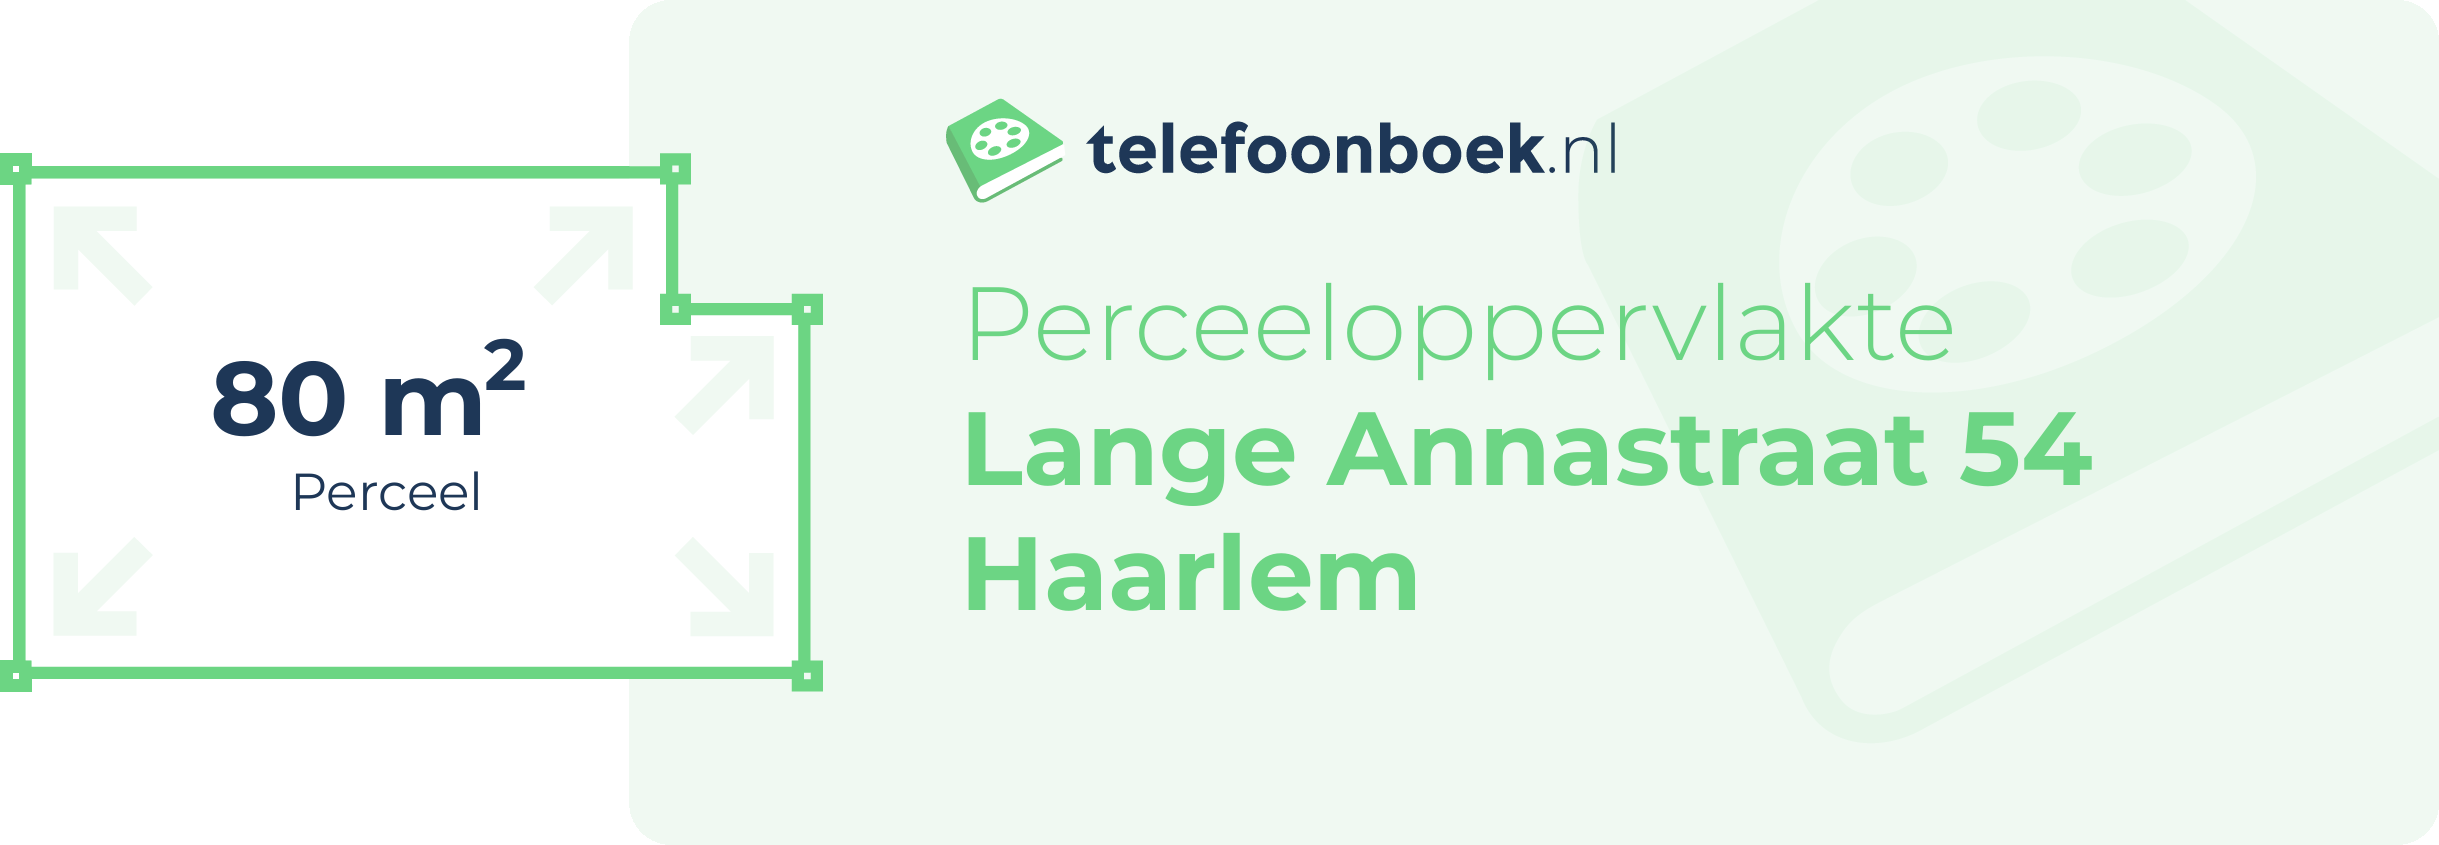 Perceeloppervlakte Lange Annastraat 54 Haarlem